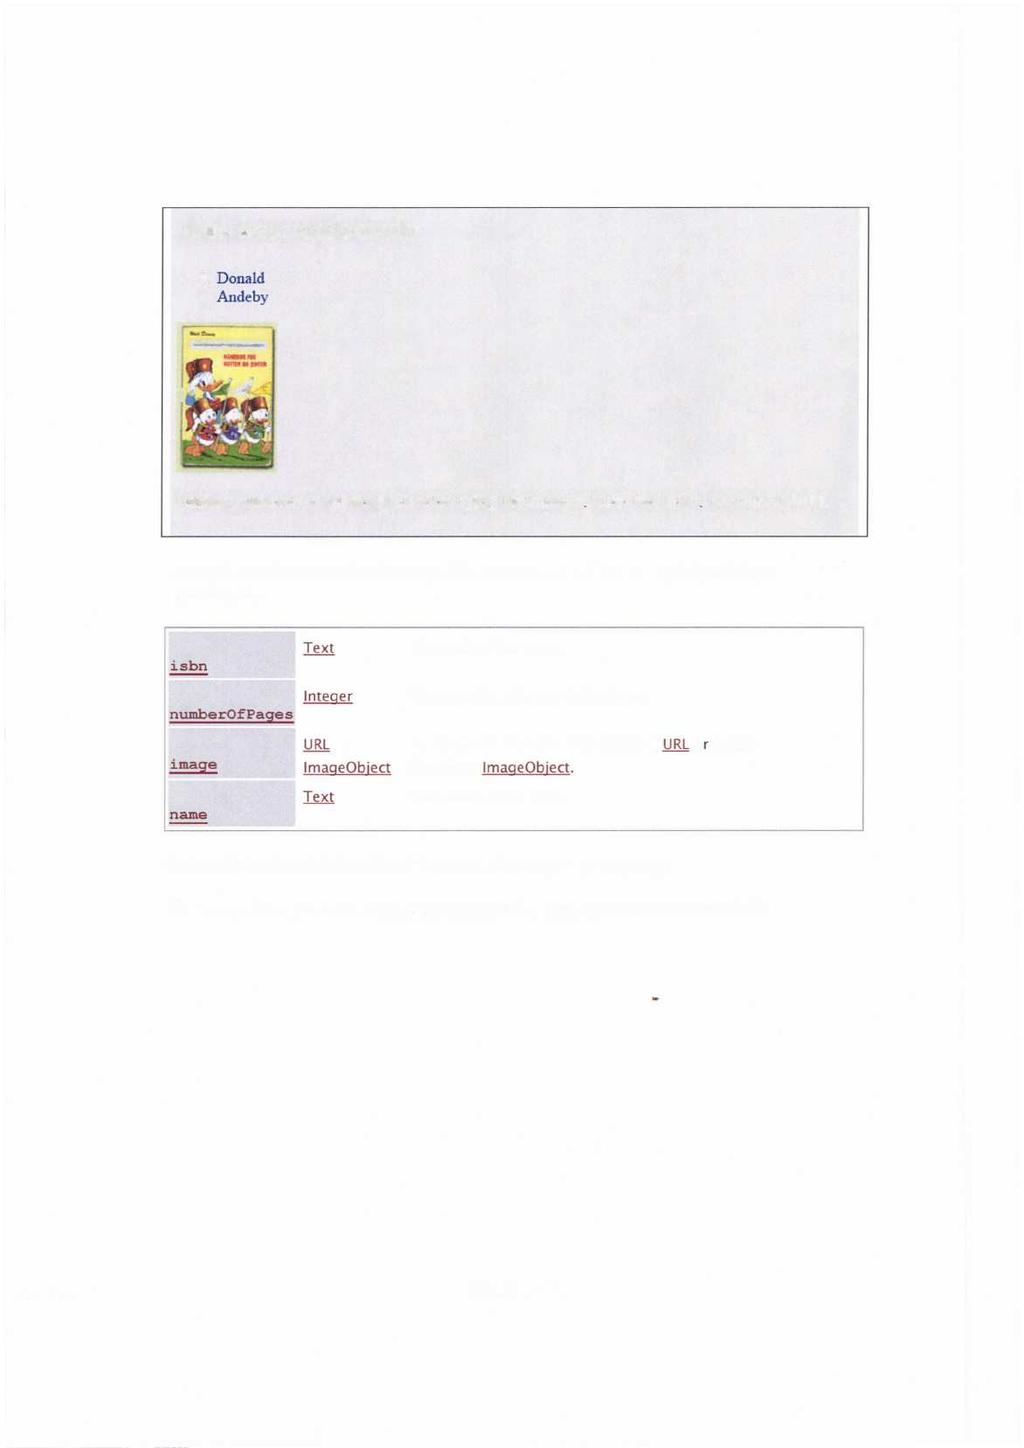 Hakkespettboken Donald Andeby Hakkespettbokener fylt med 150 sider nyttig informasjon.boka har ISBN: 1234567891011. Du skal benytte vokabularet ht tp : / /schema.